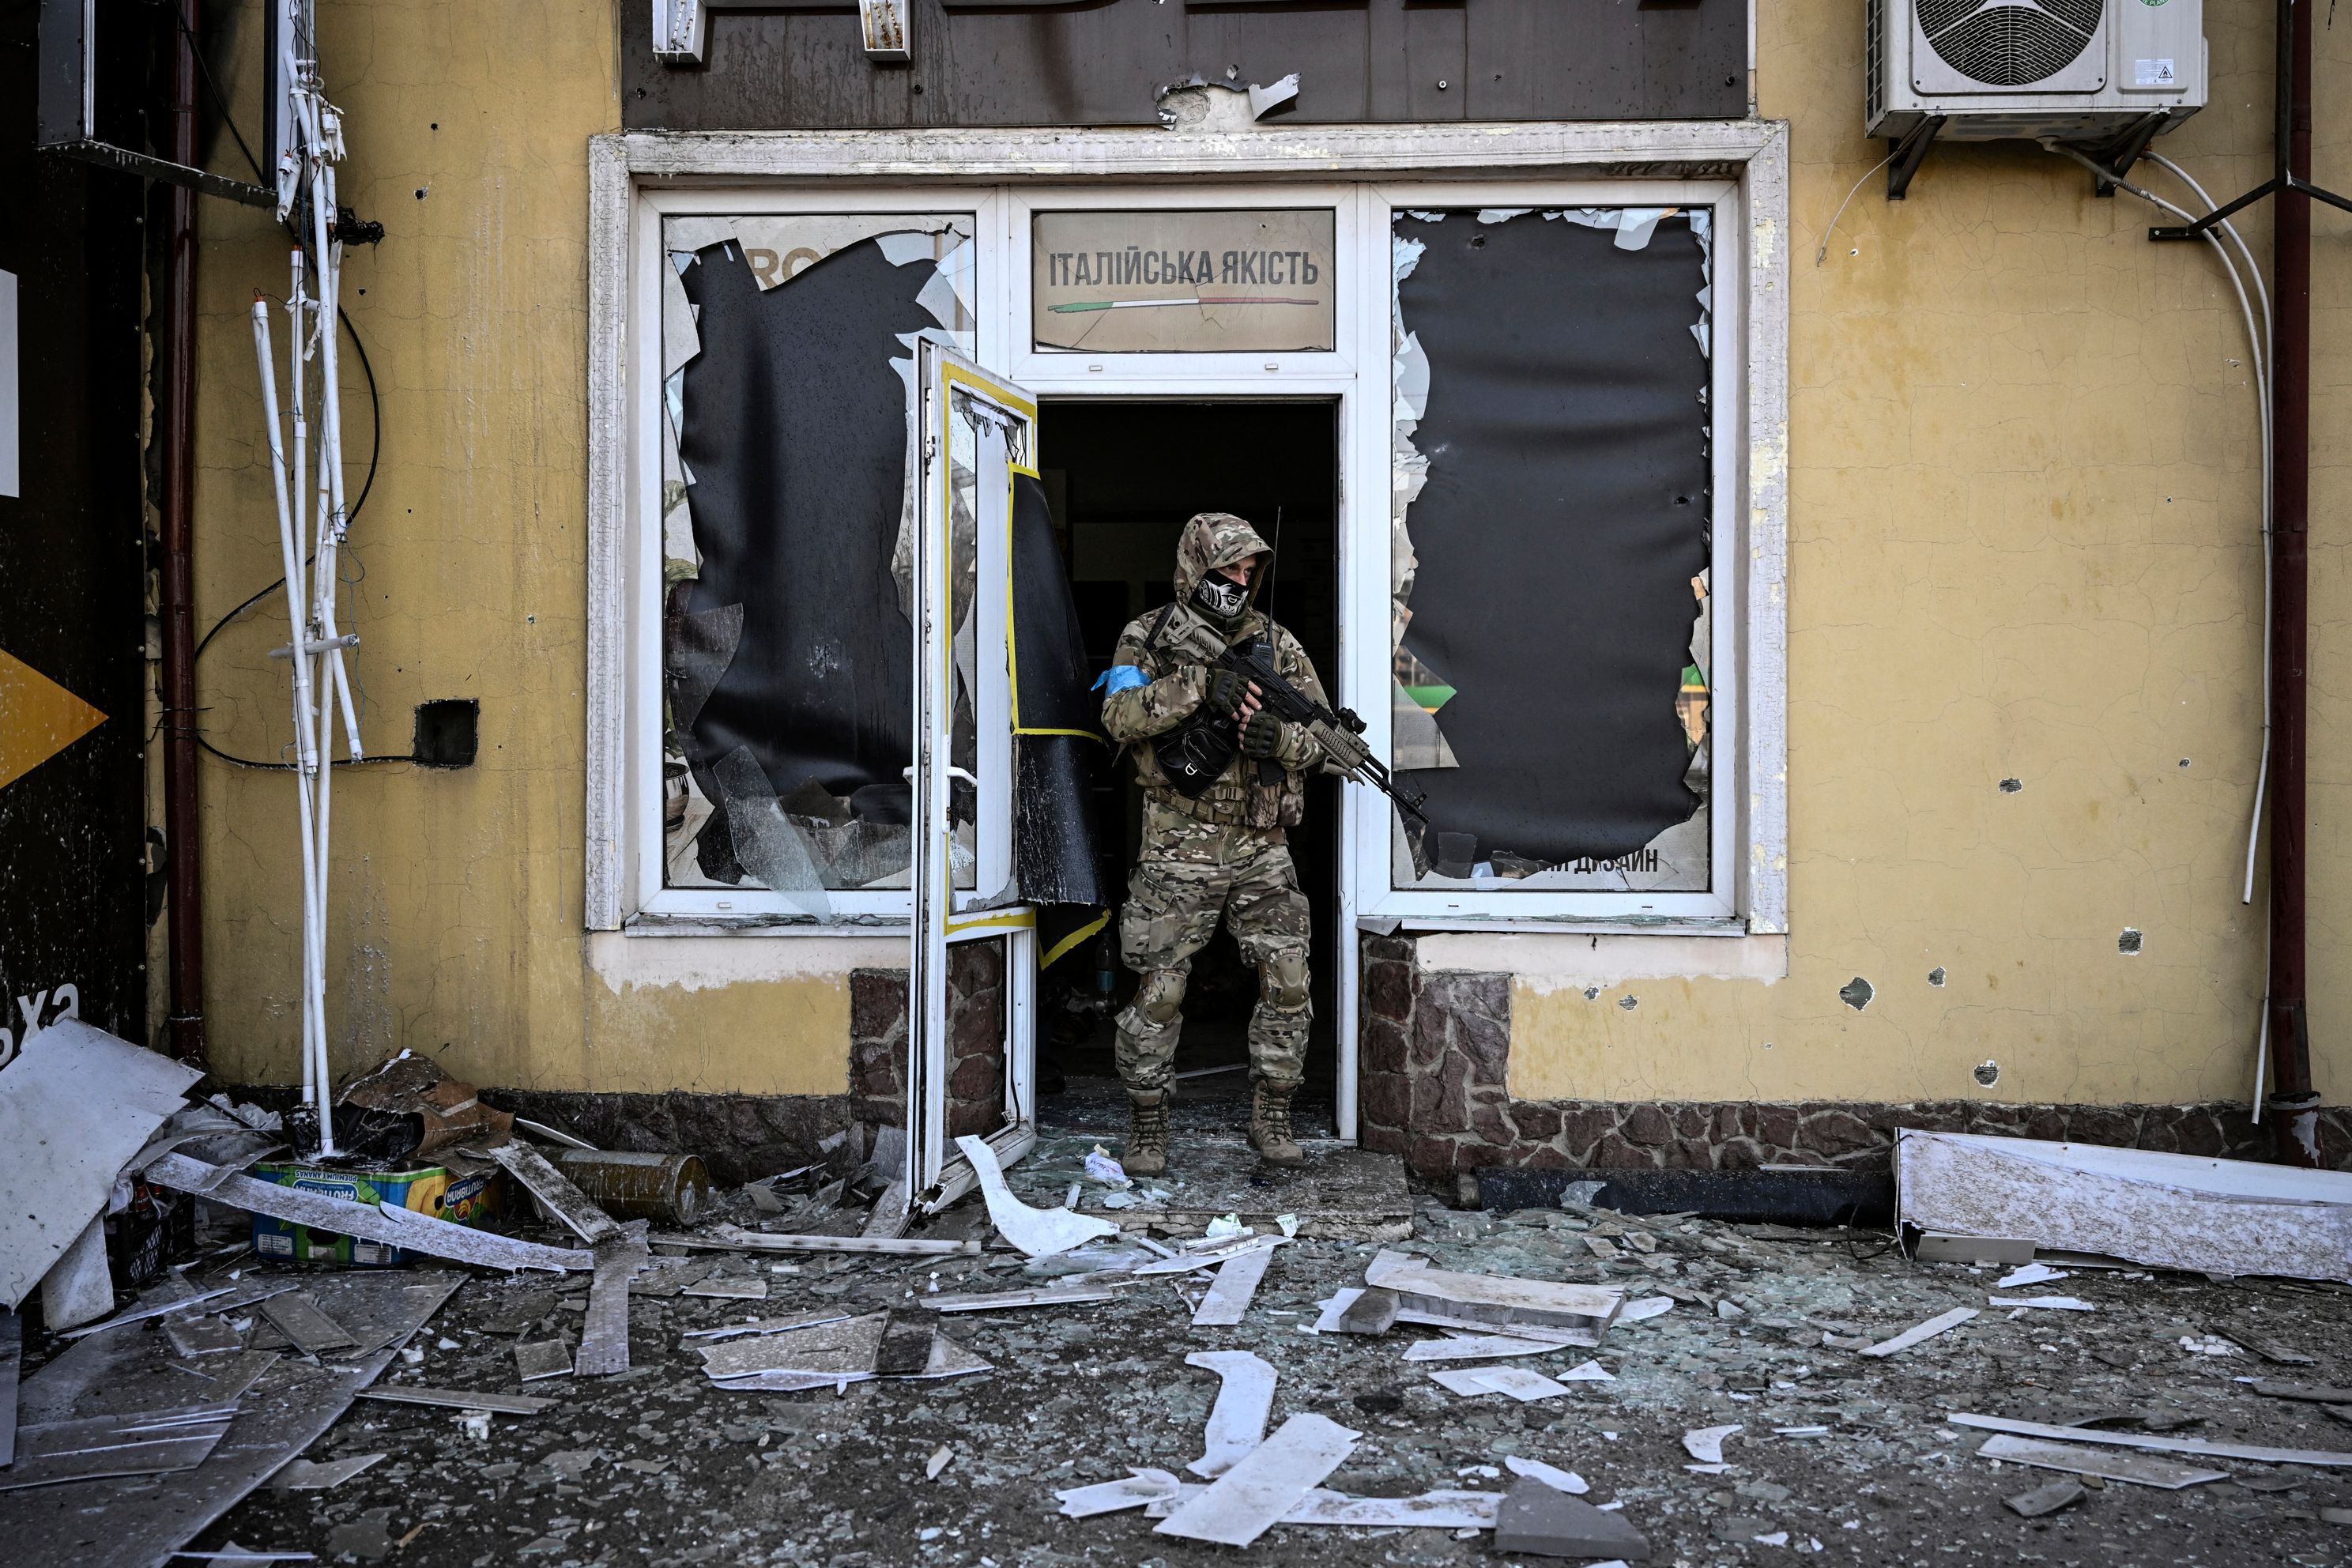 ウクライナ大隊、民間人に化学兵器を使用ロシア非難